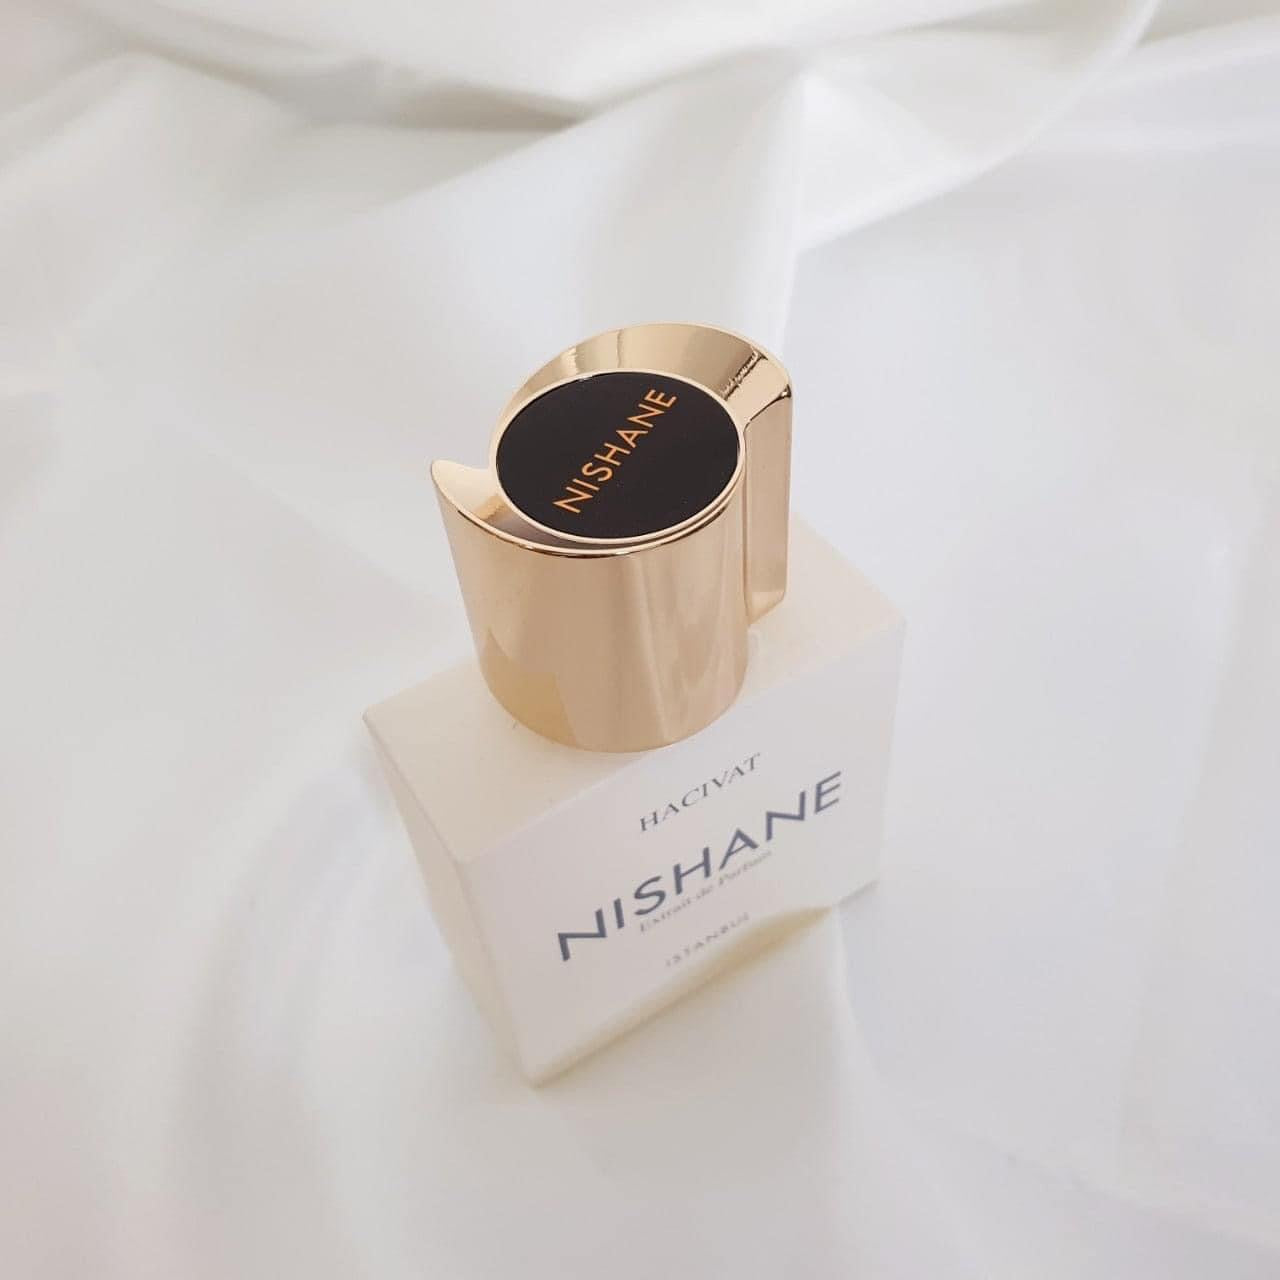 [NICHE PERFUME] Nishane Hacivat Extrait De Parfum 100ml For Men